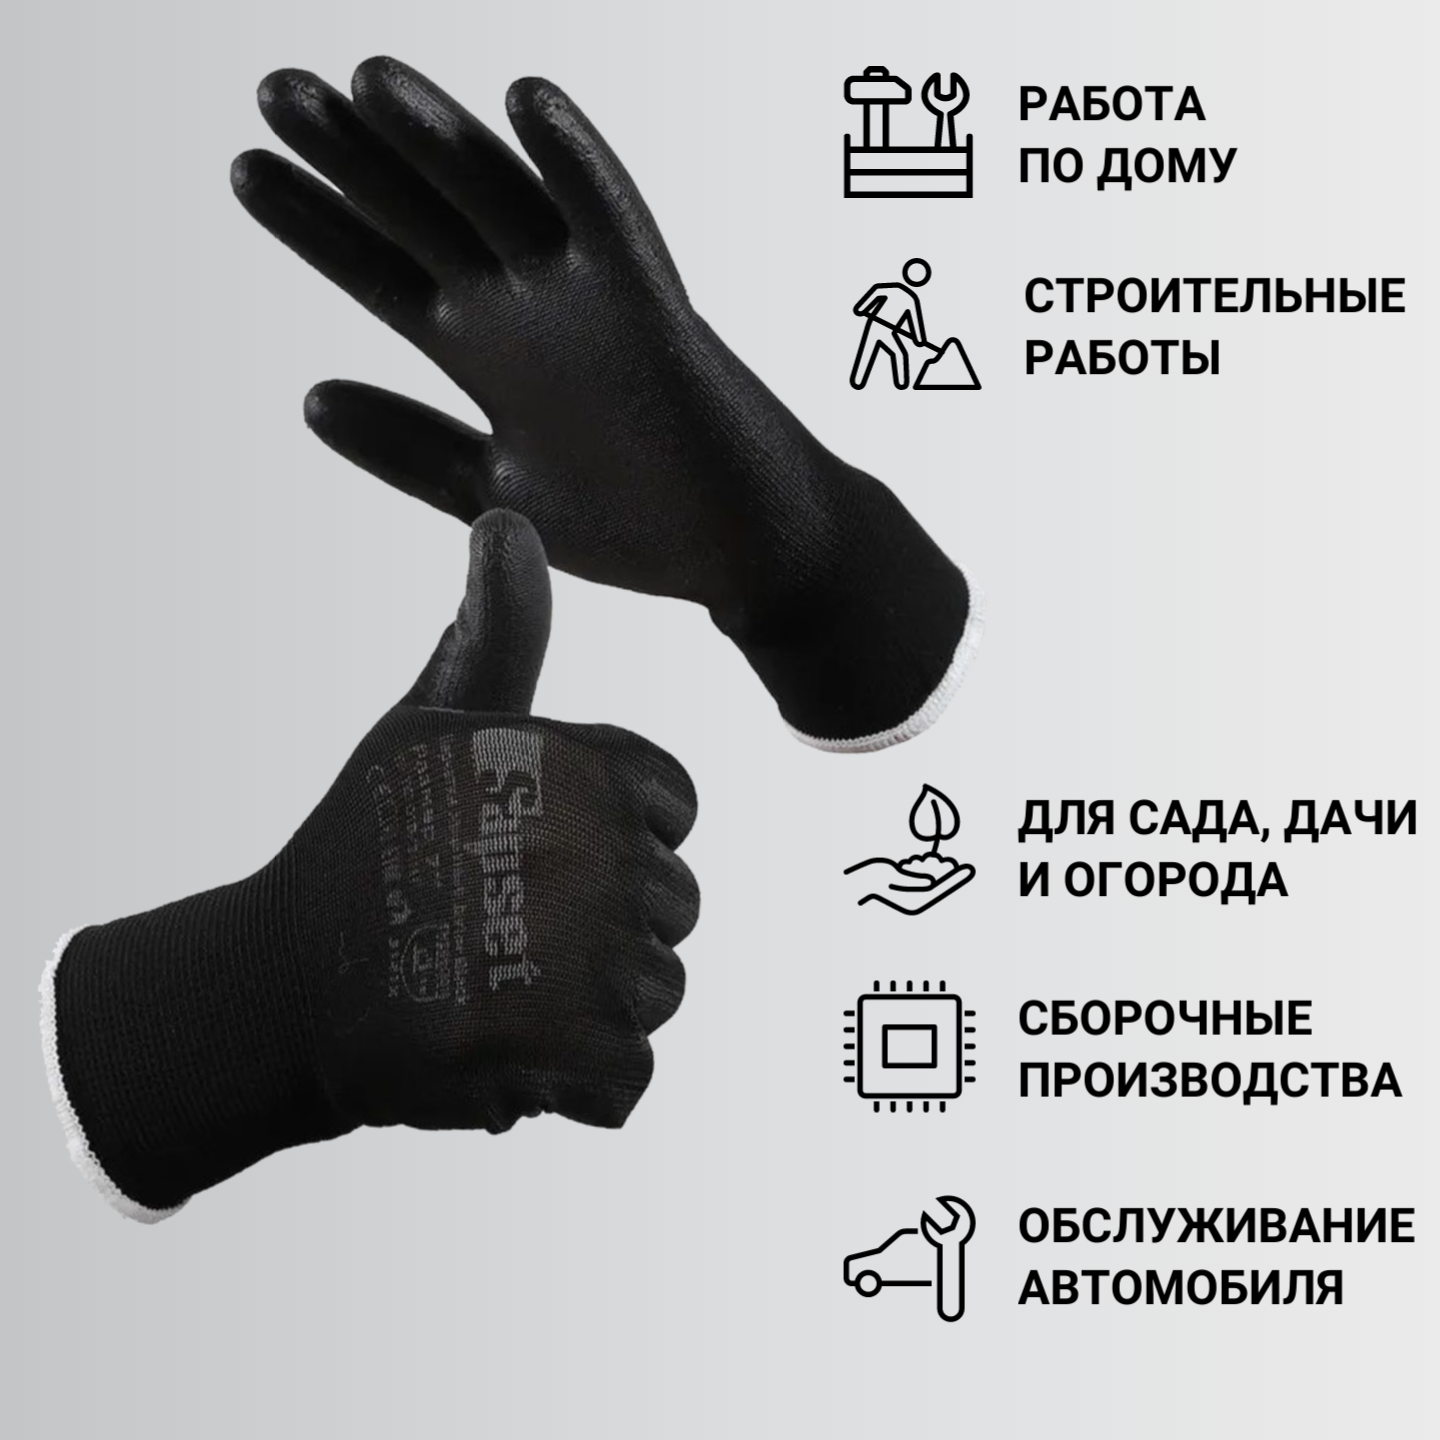 Перчатки рабочие с покрытием из полиуретана Sapset Avior Black размер XL/10 - 10 пар